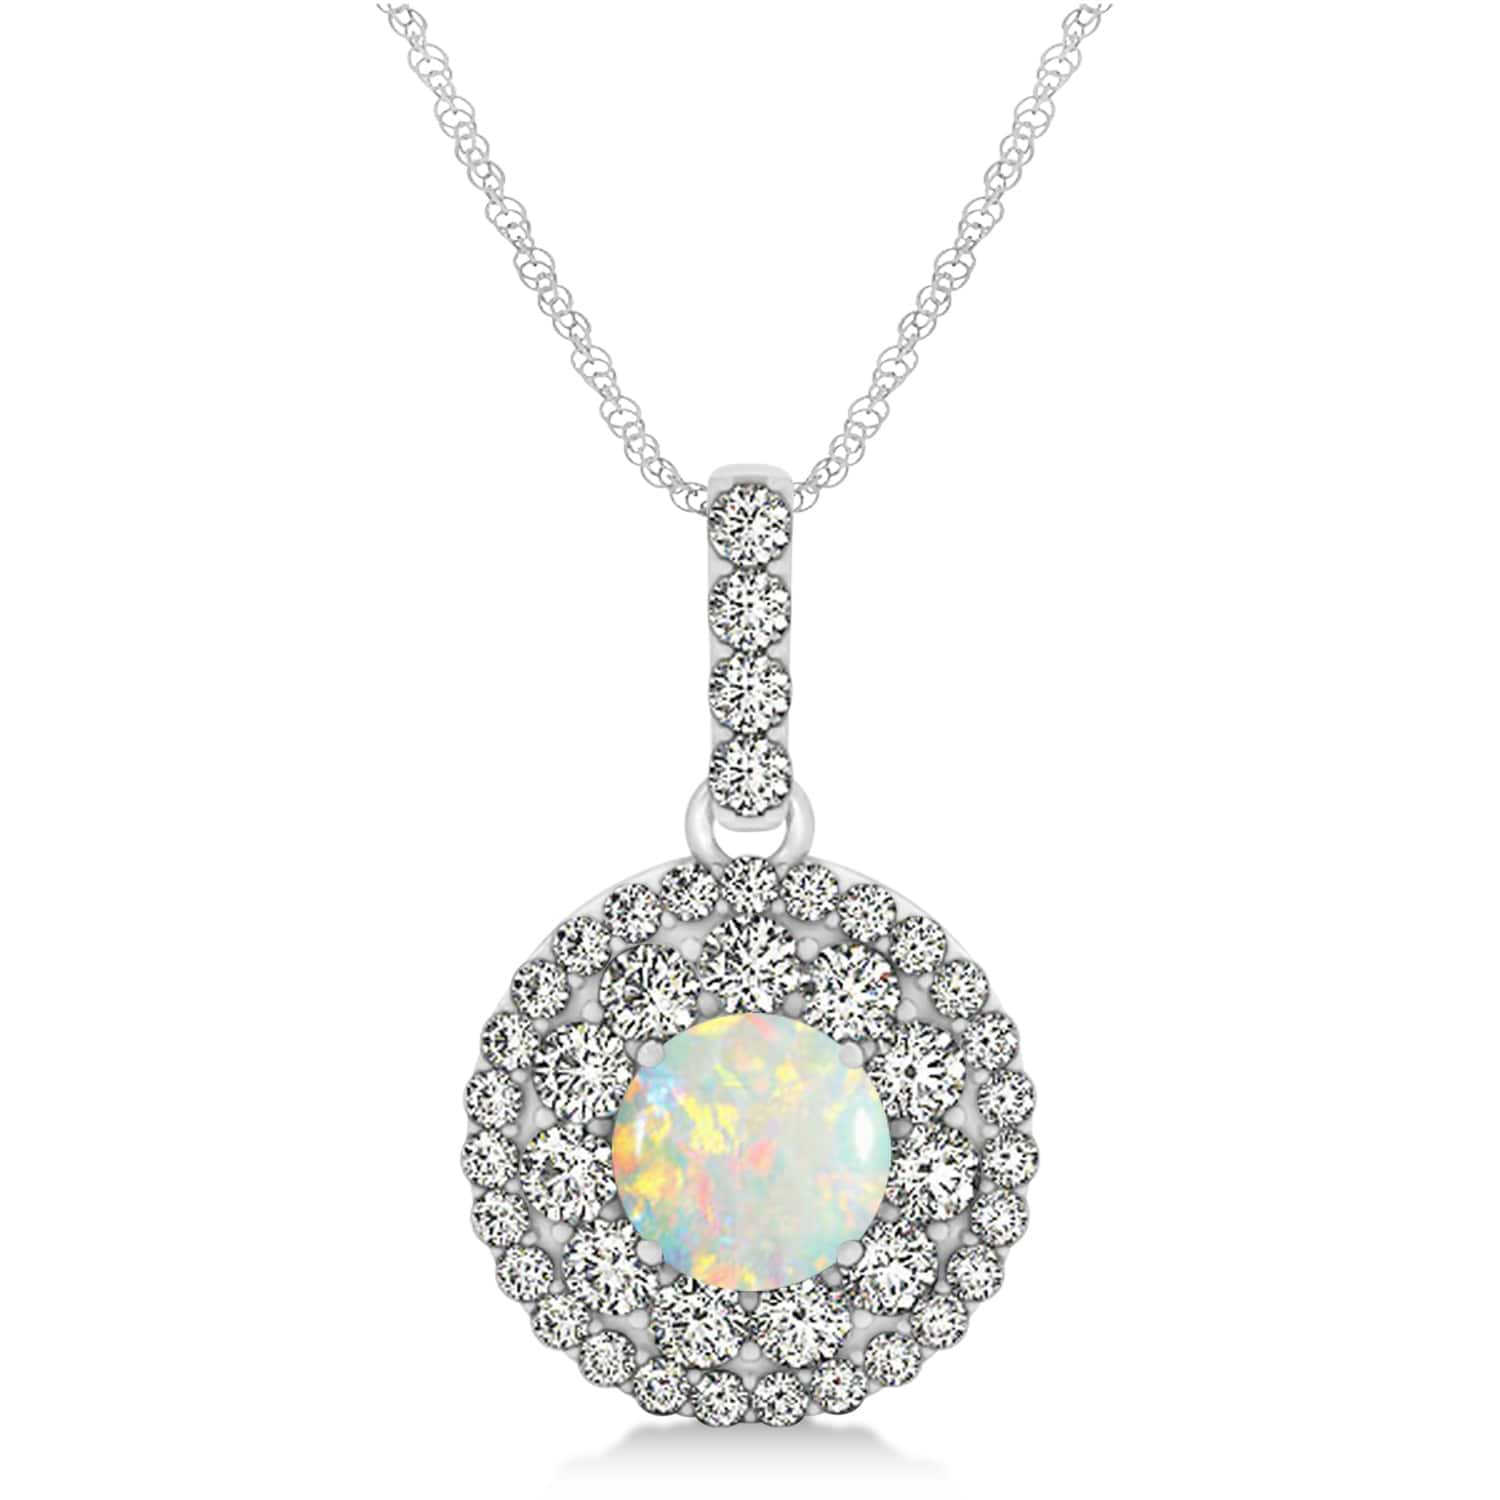 Round Double Halo Diamond & Opal Pendant 14k White Gold 1.09ct